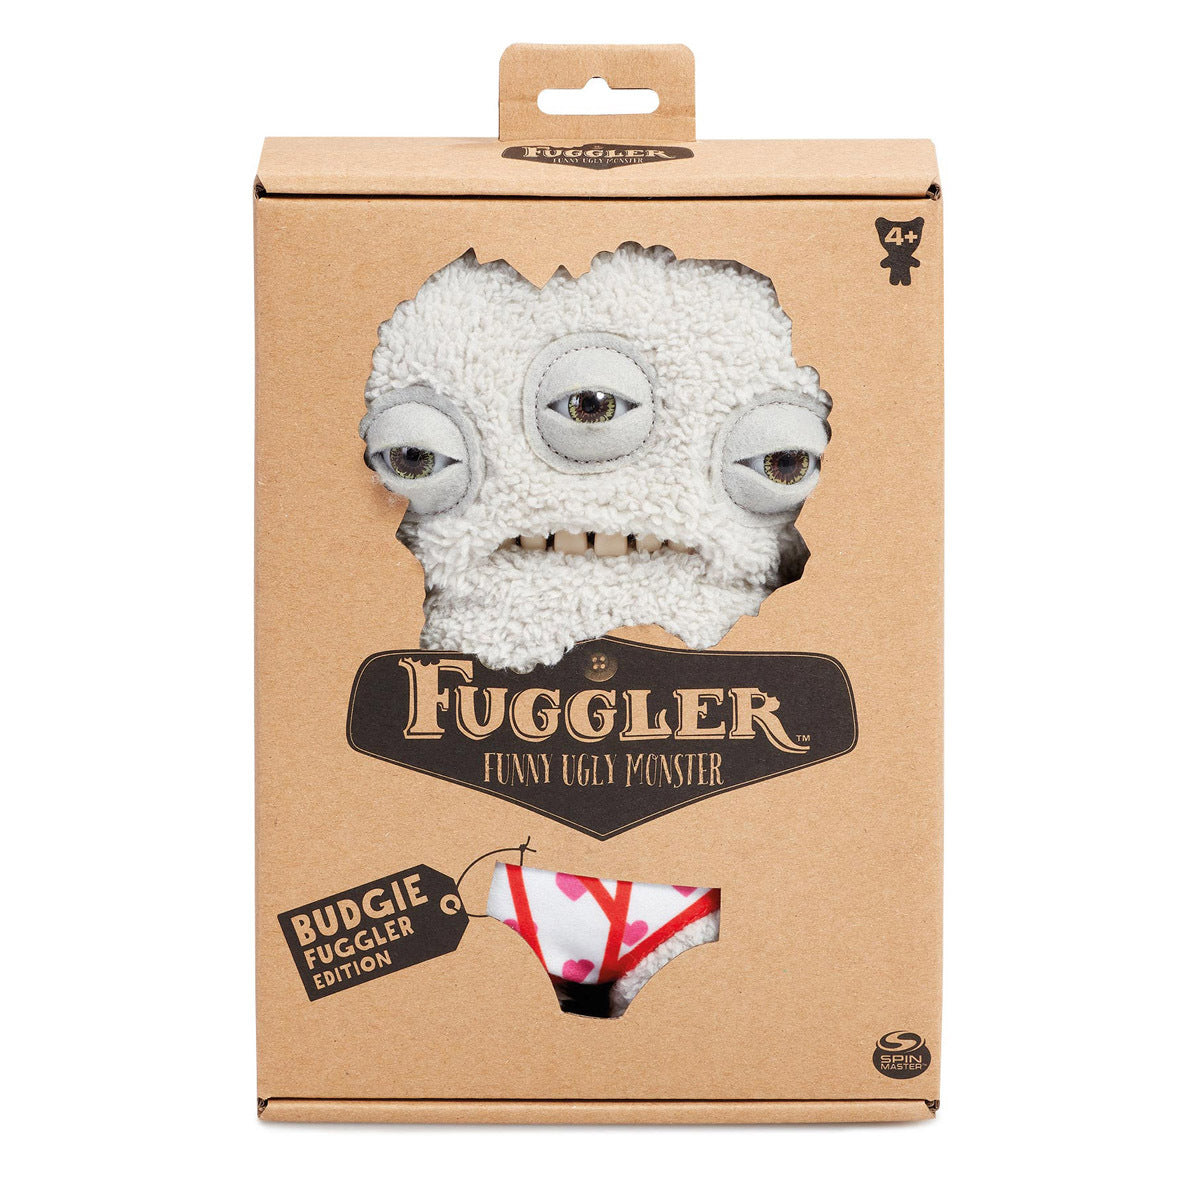 Fuggler 22cm Funny Ugly Monster - Budgie Fuggler Annoyed Alien (Grey) Soft Toy